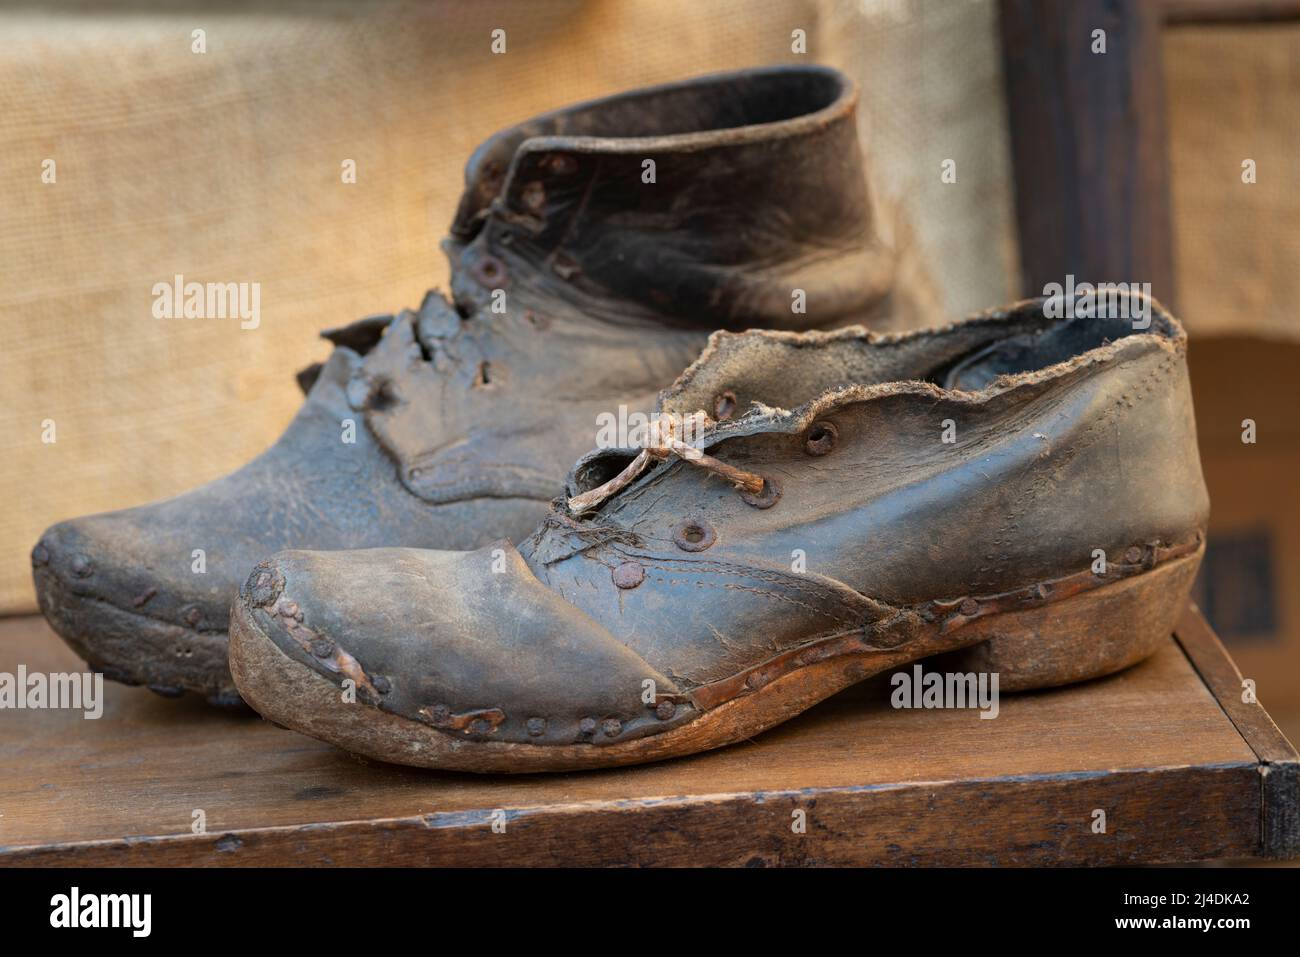 Italia, Lombardia, mercato delle pulci, scarpe in pelle vecchia rotta Foto Stock